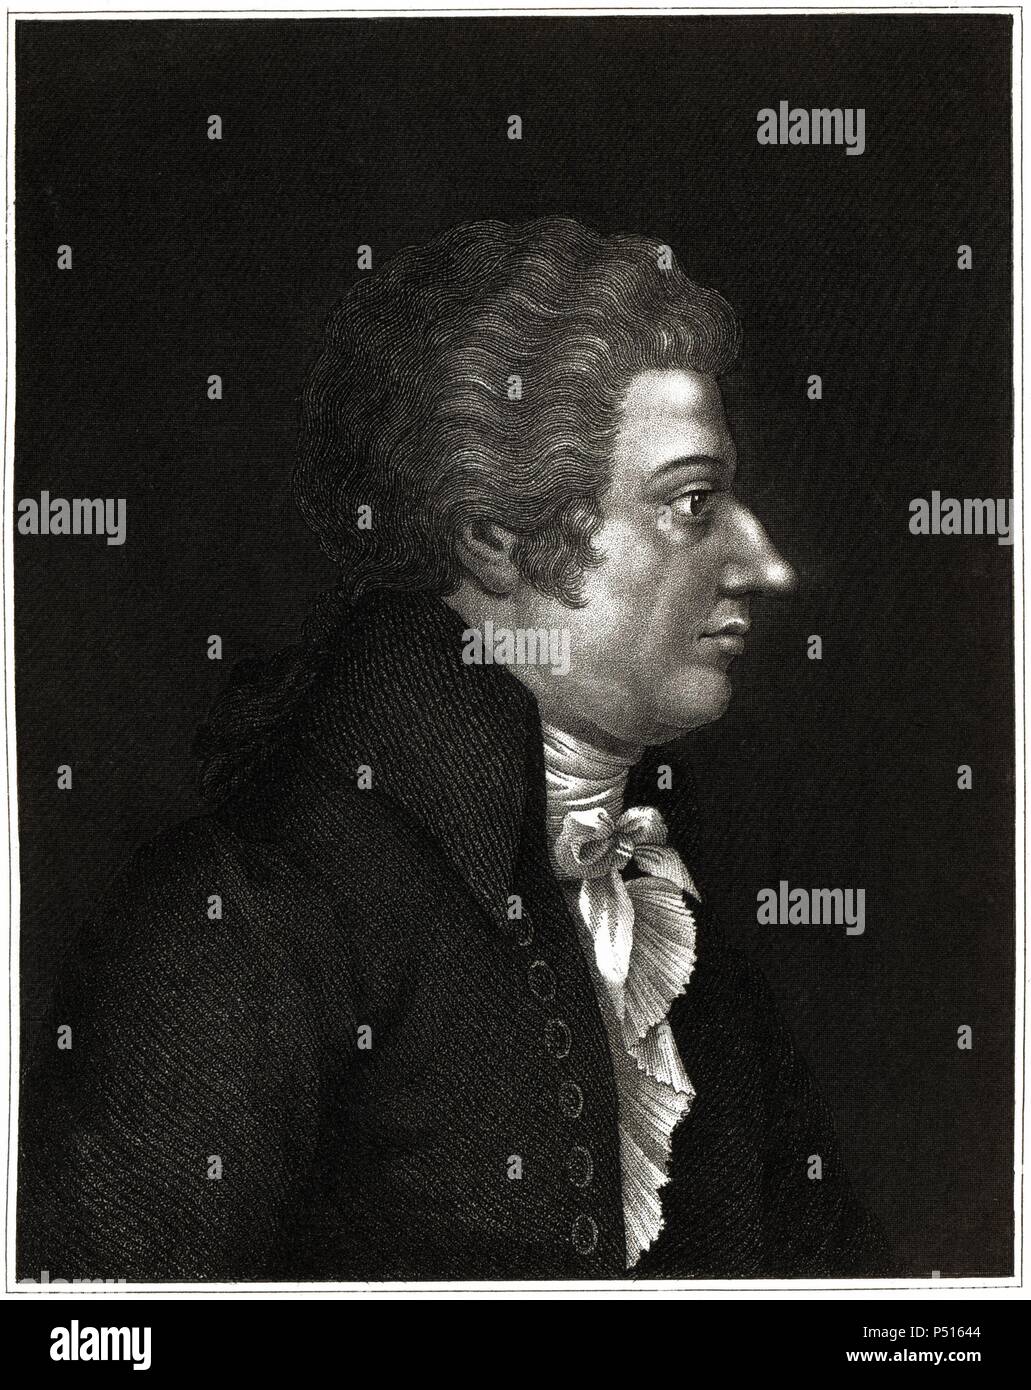 Johann Wolfgang Amadeus Mozart (Salzburg, 1756-Viena, 1791). Compositor austríaco de música clásica. Grabado de 1857. Stock Photo